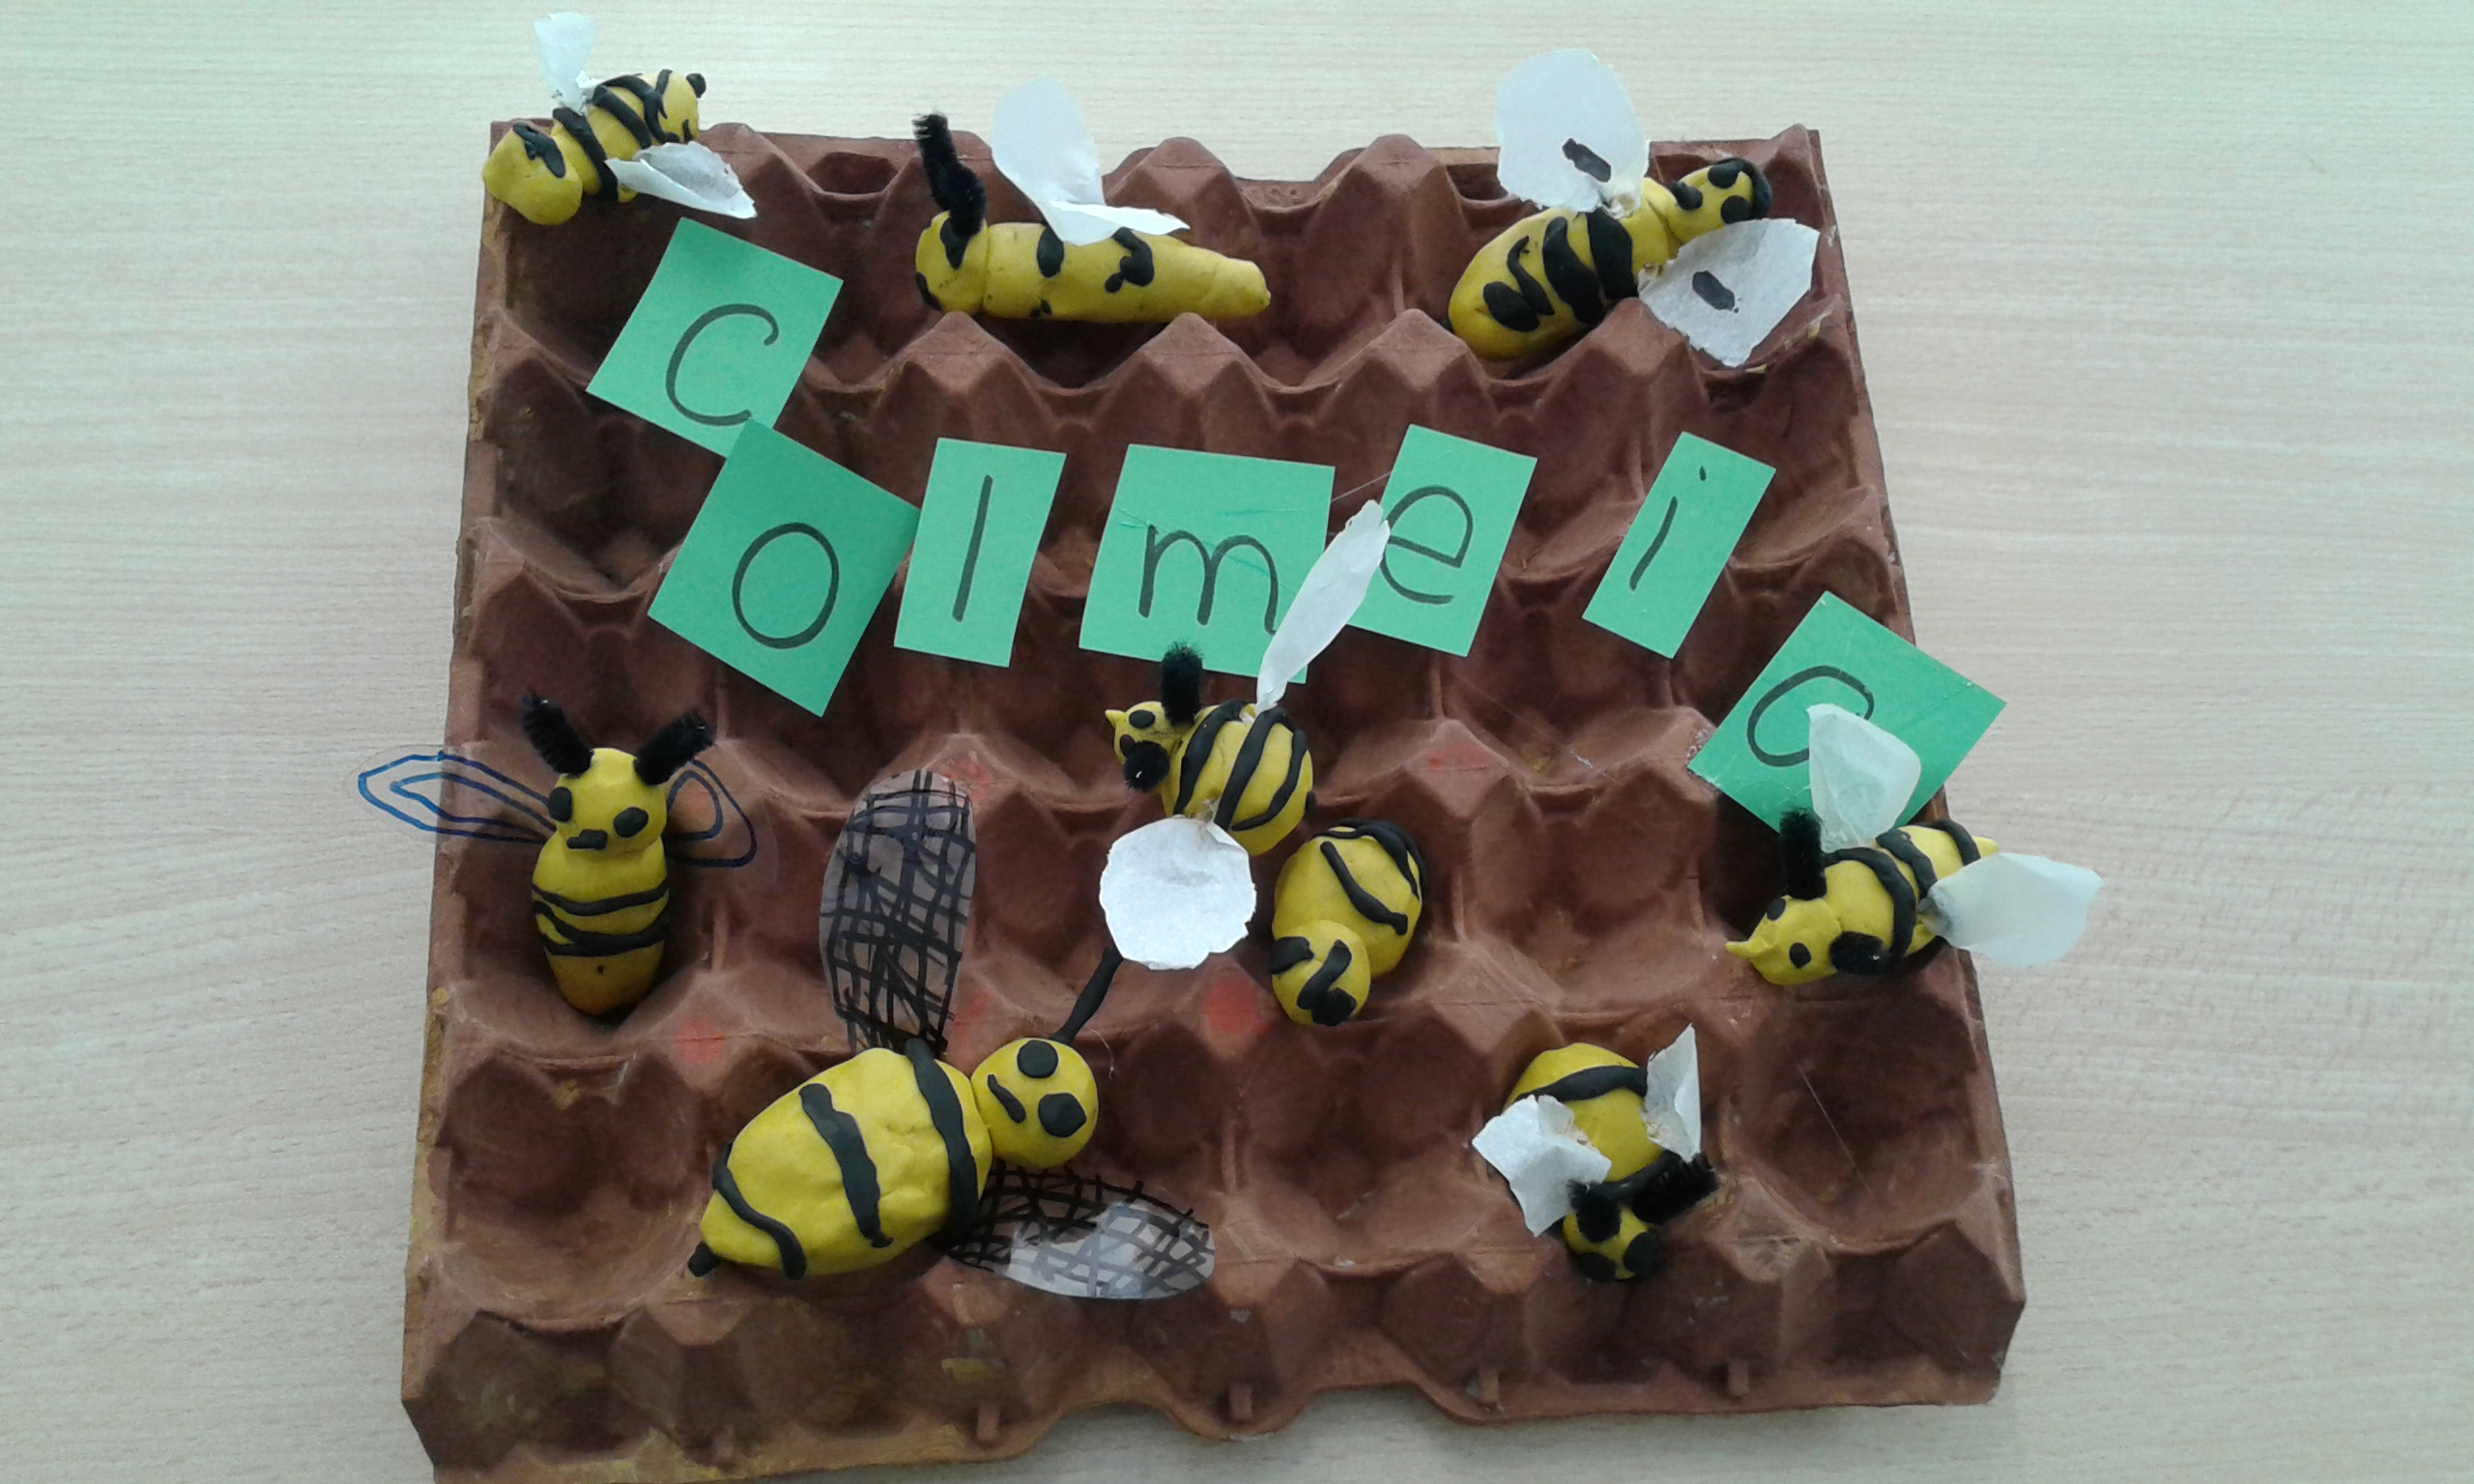 colmeia das abelhas - Trabalho realizado pelas crianças do Pré - escolar.